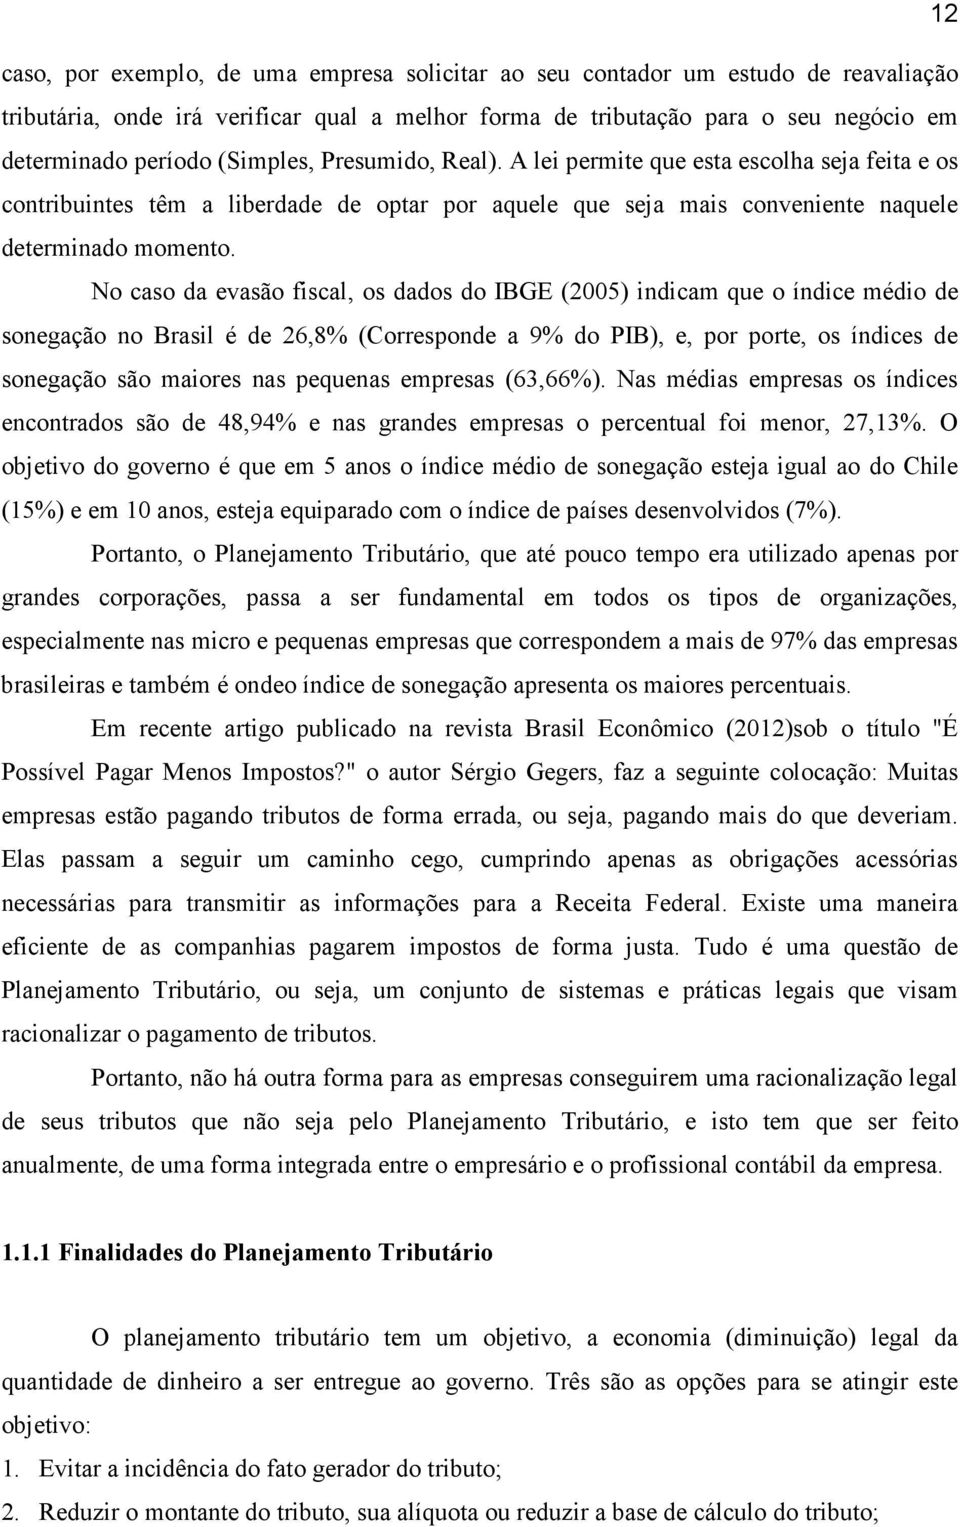 No caso da evasão fiscal, os dados do IBGE (2005) indicam que o índice médio de sonegação no Brasil é de 26,8% (Corresponde a 9% do PIB), e, por porte, os índices de sonegação são maiores nas